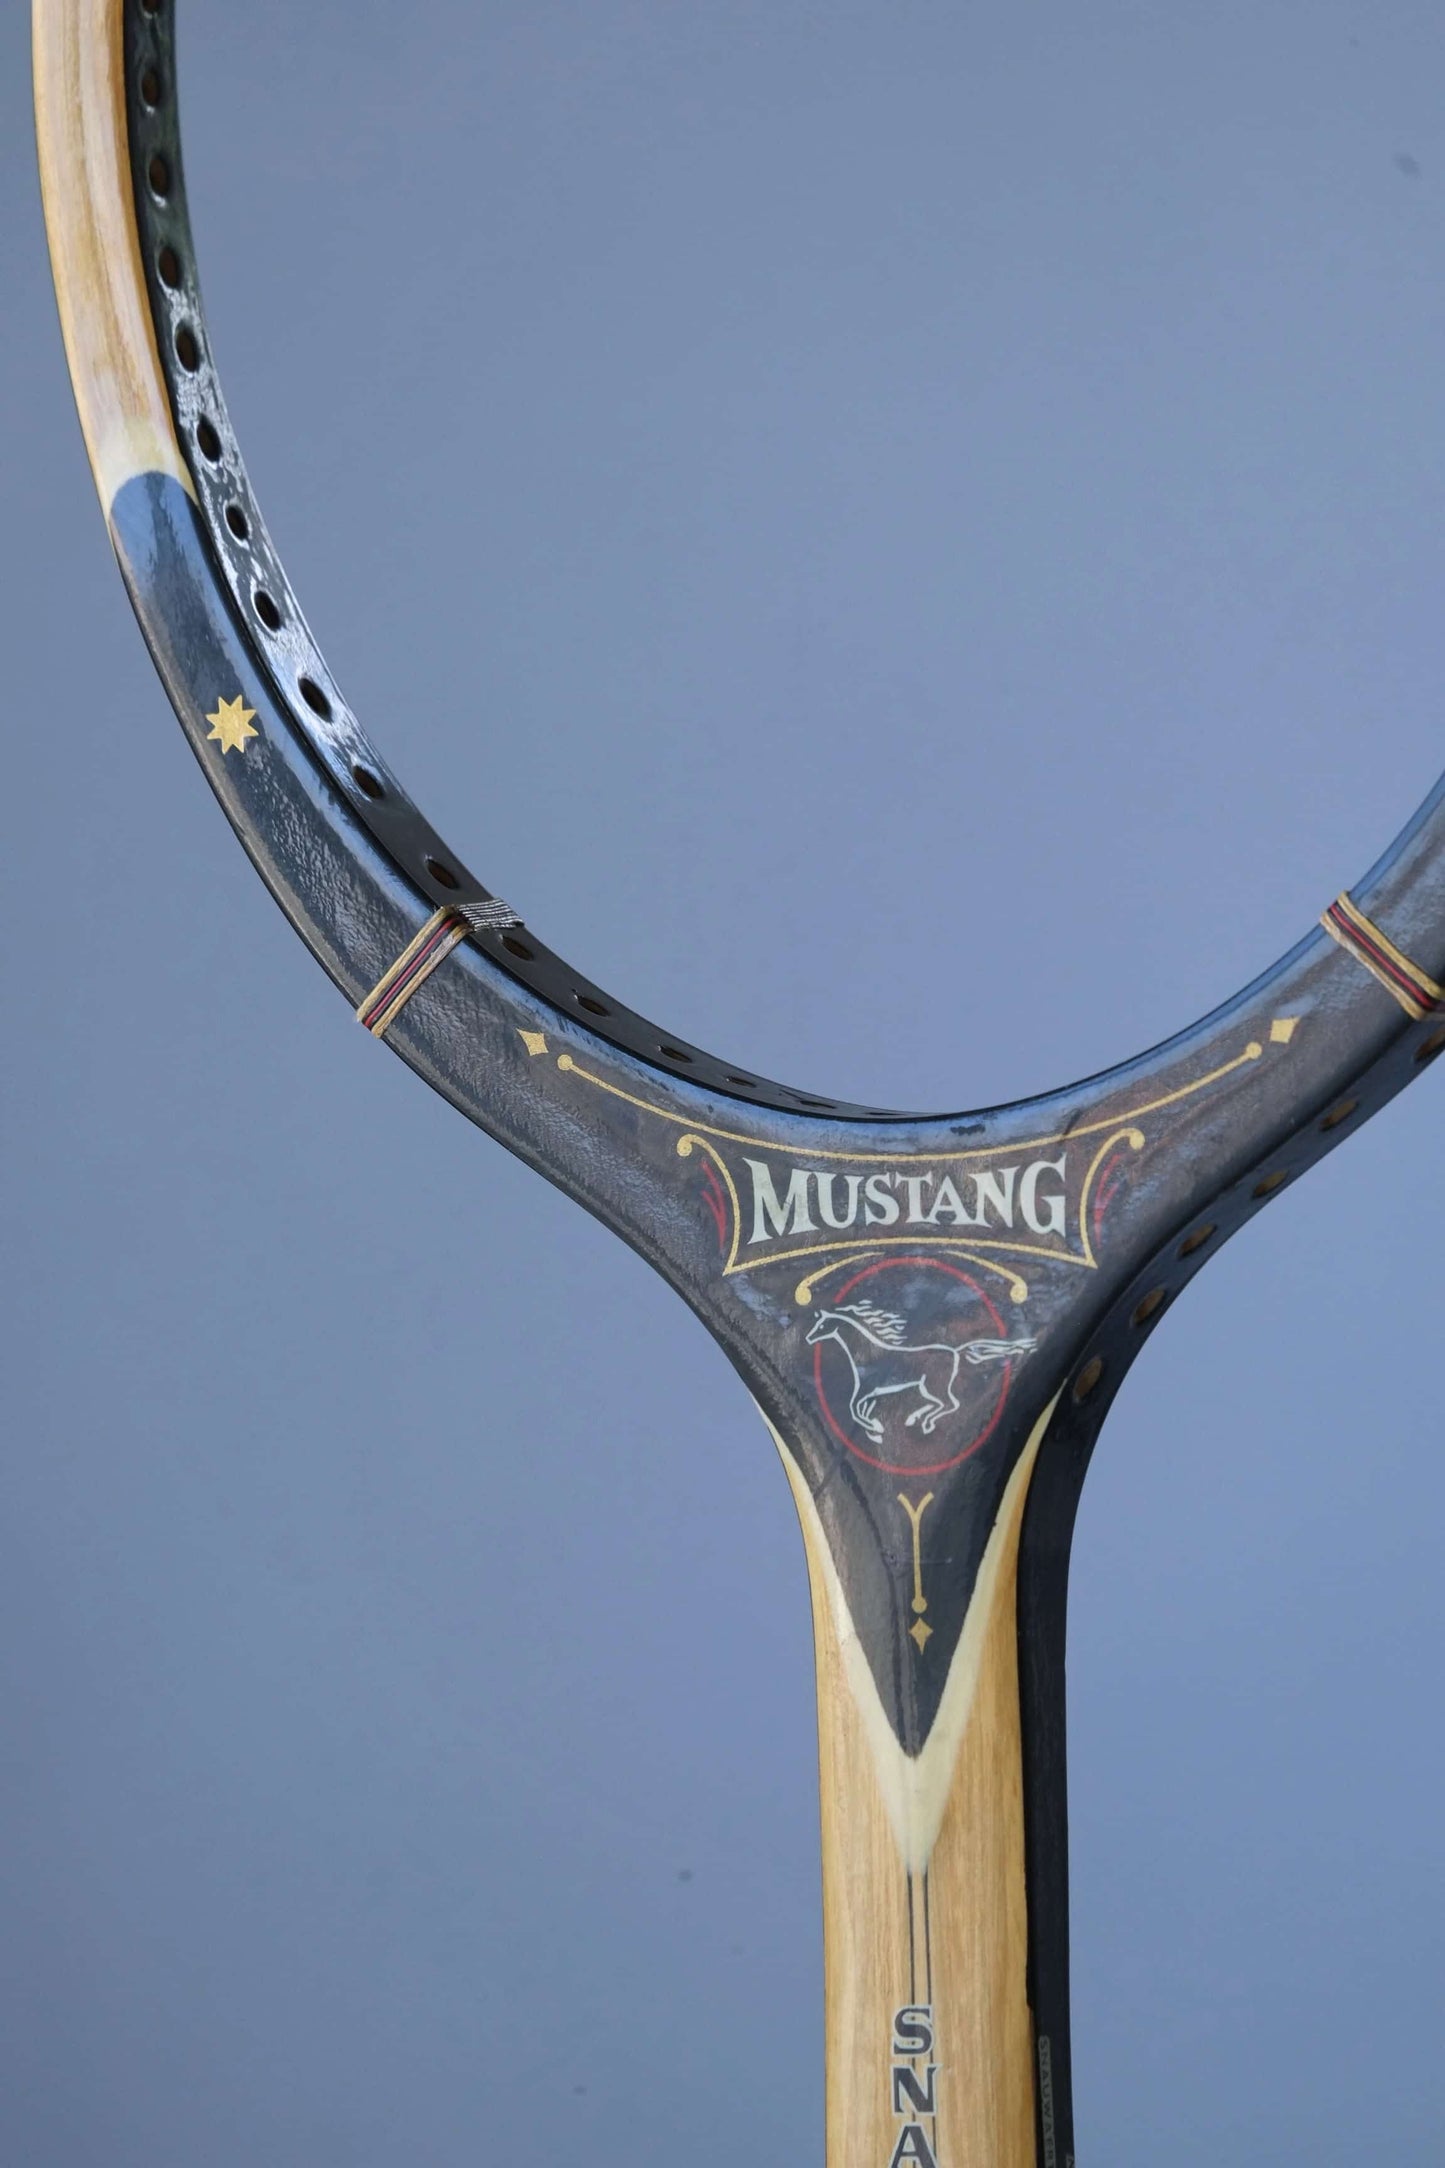 SNAUWAERT Mustang Vintage Tennis Racquet head